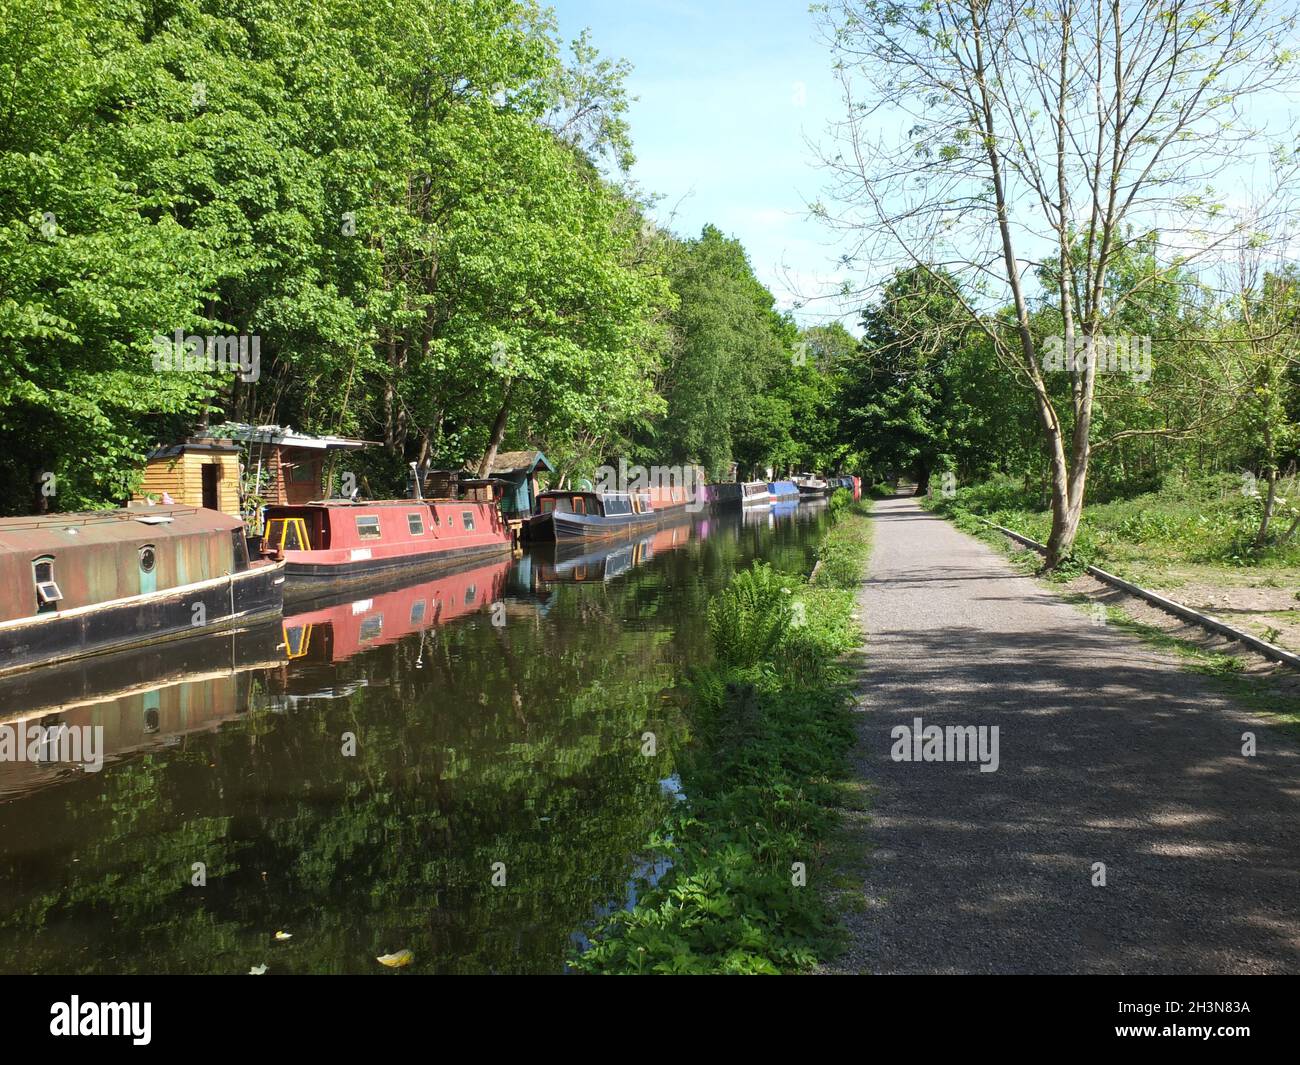 Barcos antiguos del canal amarrados en el canal rochdale cerca del puente hebden rodeado de árboles bajo la luz del sol en verano Foto de stock